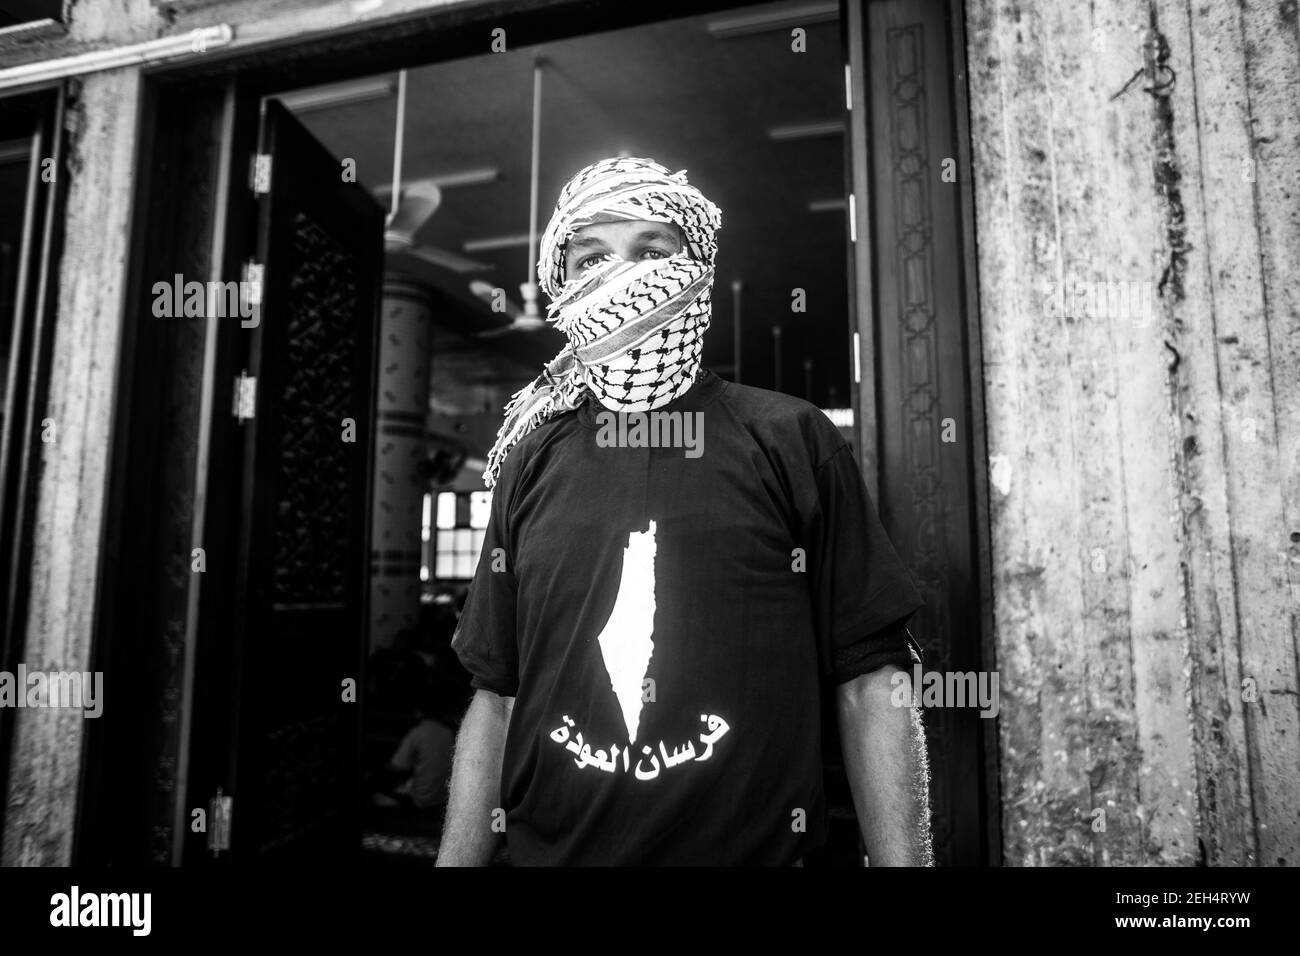 Un uomo in posa per una foto con una mappa della Palestina sulla sua T-shirt al funerale di Jamal Affana (15) è morto di una ferita da un colpo d'arma da fuoco durante le manifestazioni di venerdì scorso alla recinzione di confine con Israele a Gaza il 13 maggio 2018 a Rafah, Gaza. Jamal è stato ucciso venerdì da un cecchino israeliano mentre partecipava alle manifestazioni. Per i 1.9 milioni di palestinesi che vivono nella striscia di Gaza, la vita è diventata una lotta quotidiana per cibo, elettricità e denaro dopo 10 anni di blocco israeliano nella regione. Finora le manifestazioni hanno provocato 40 morti palestinesi e più di 1,700 feriti Foto Stock